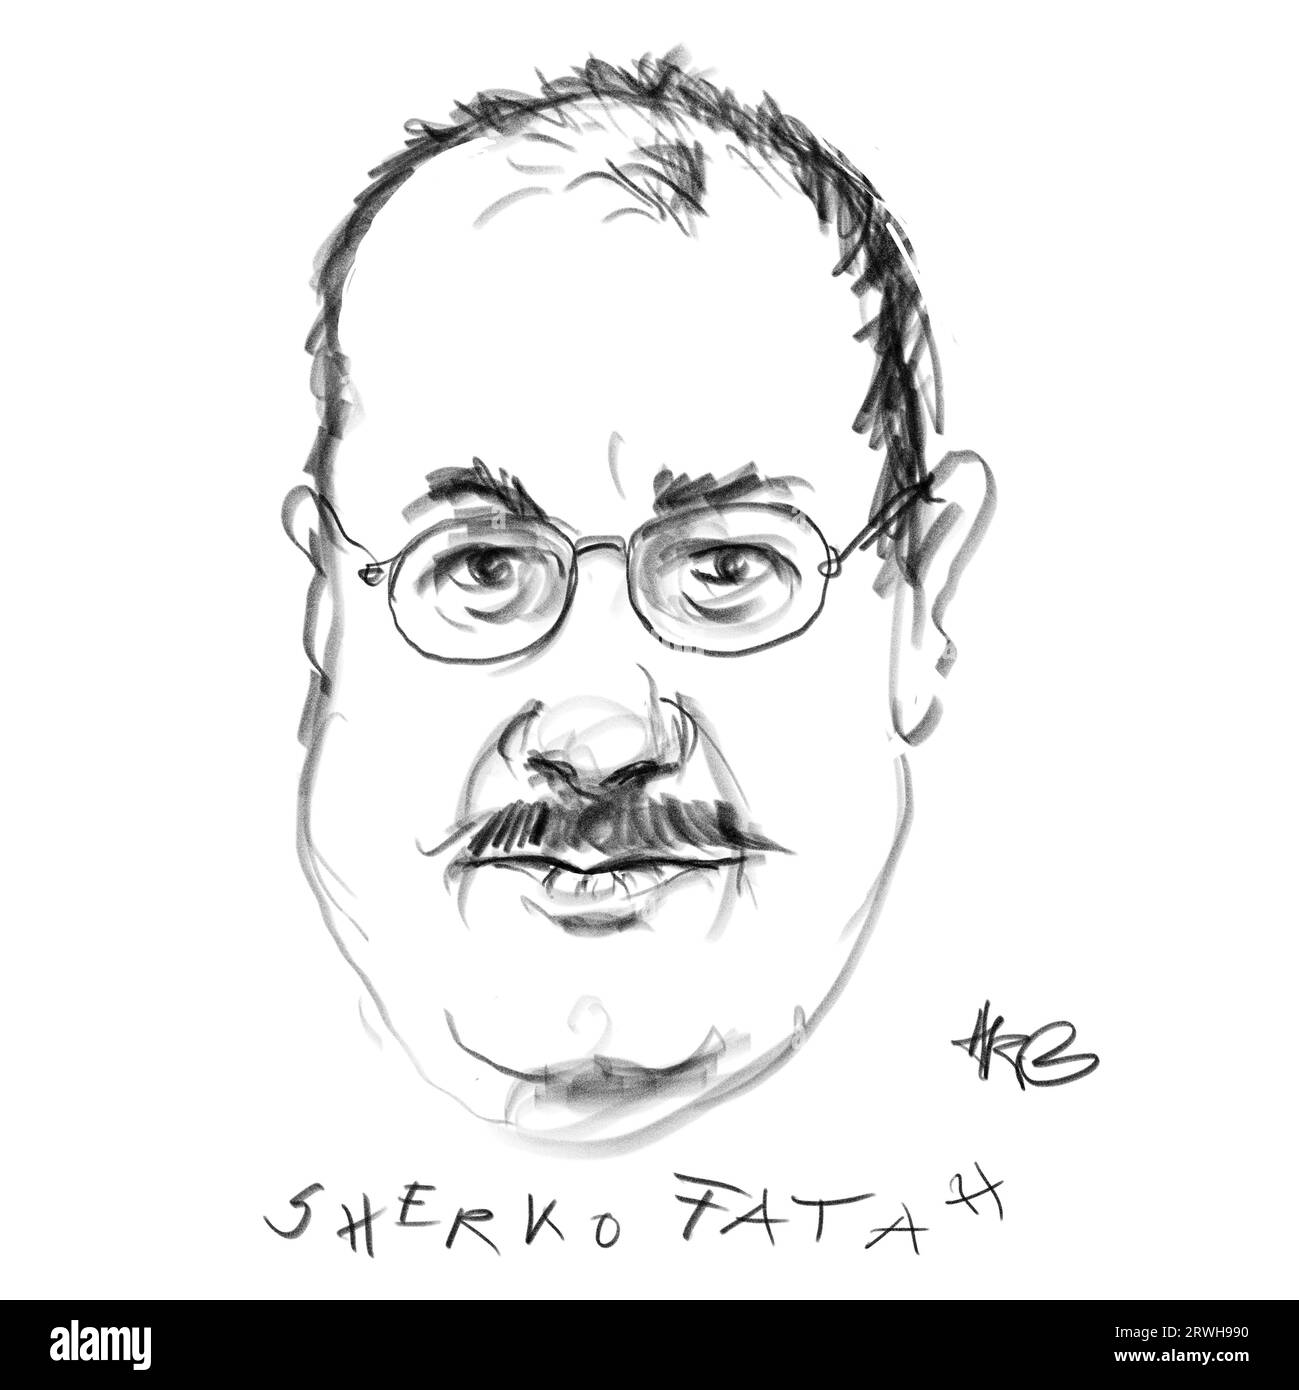 Ritratto dell'autore Sherko Fatah Foto Stock